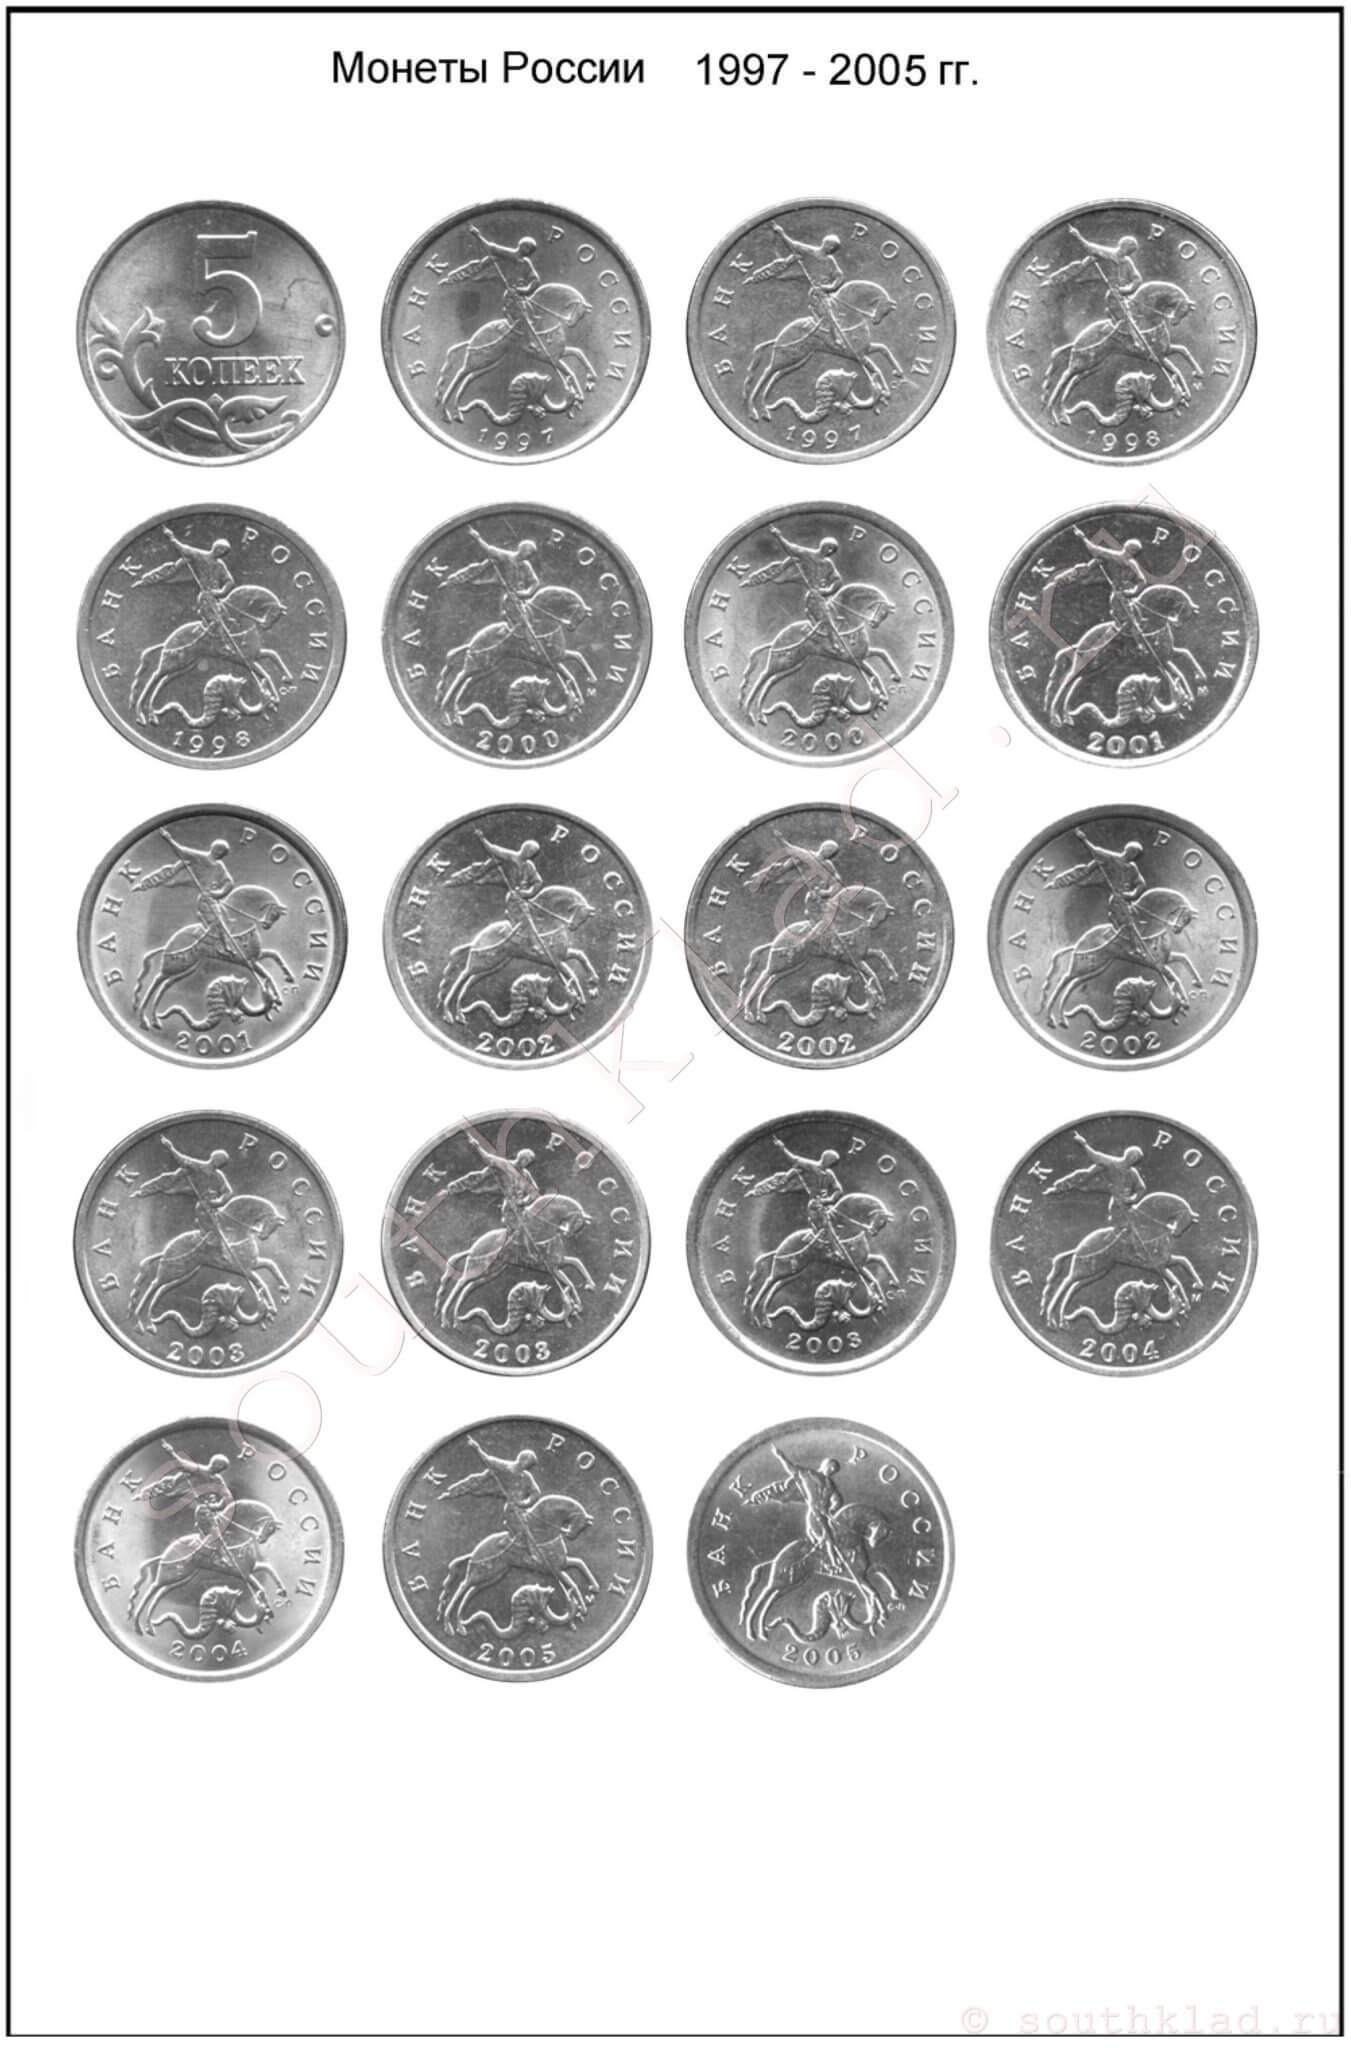 5 копеек. Монеты России образца 1997 года